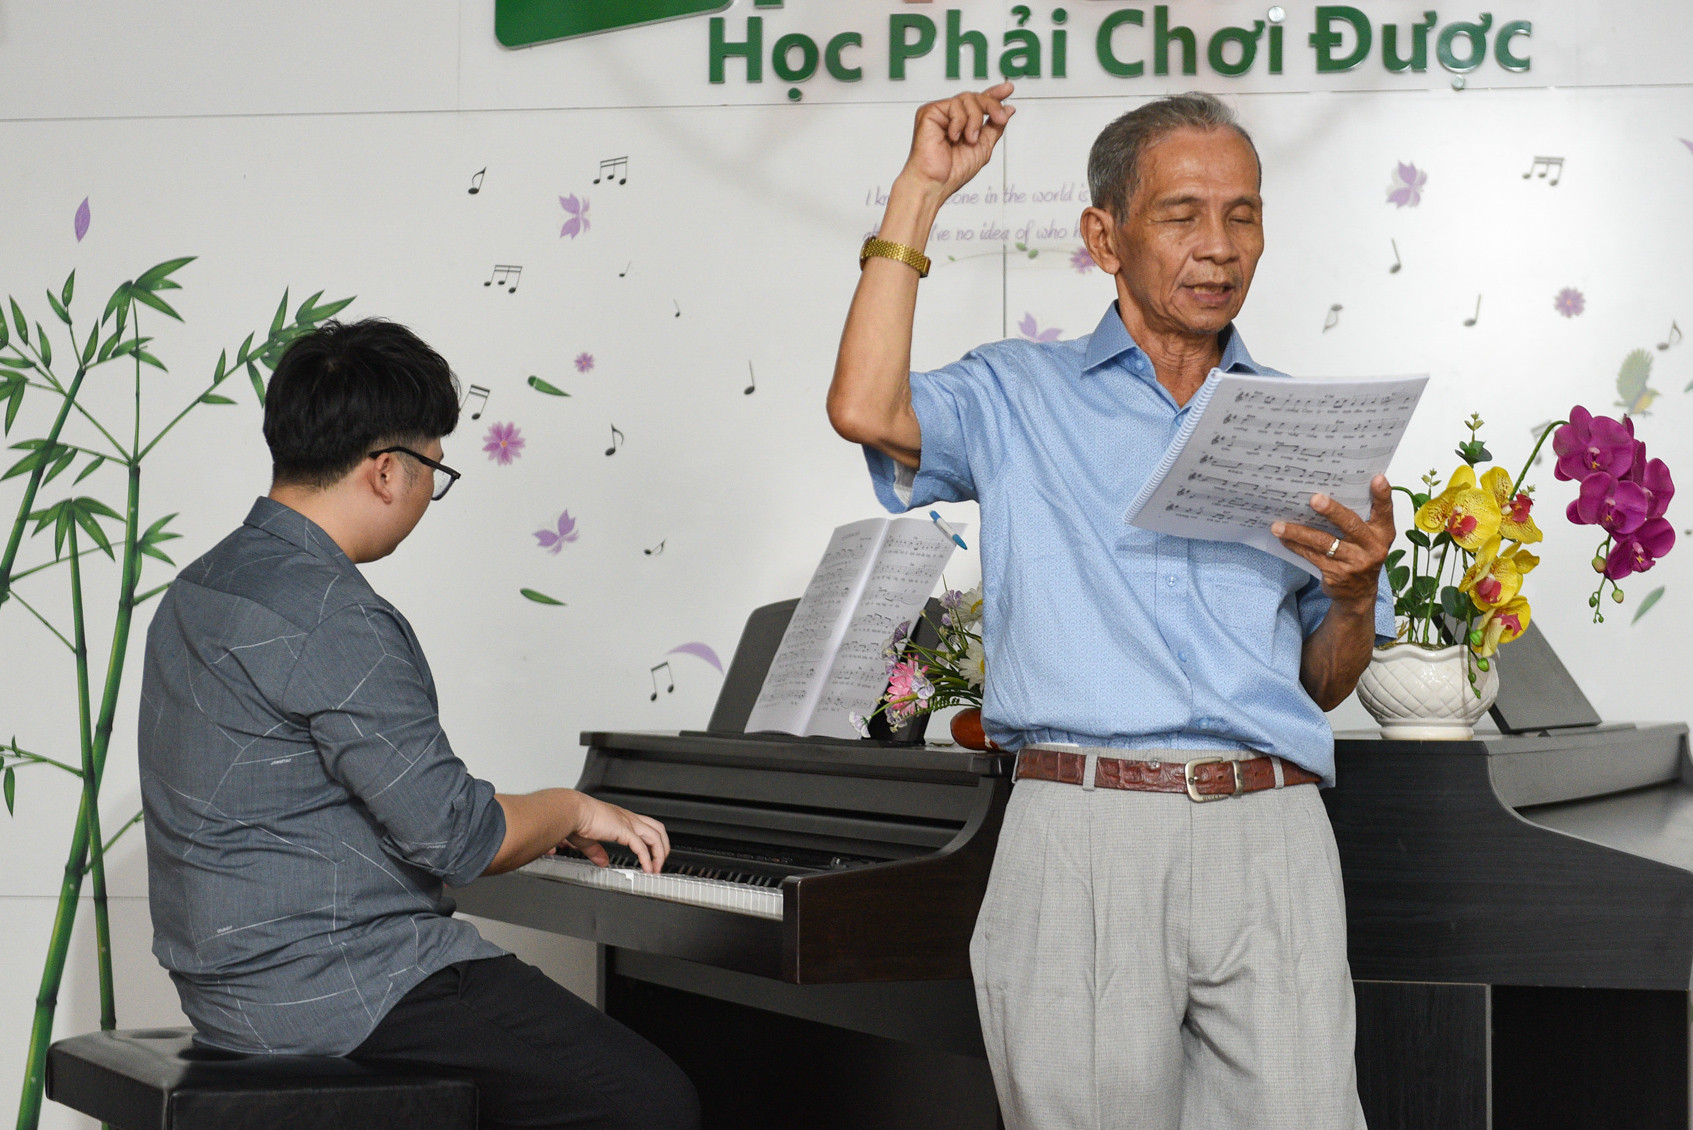 Lớp học piano miễn phí cho người cao tuổi ở TP.HCM